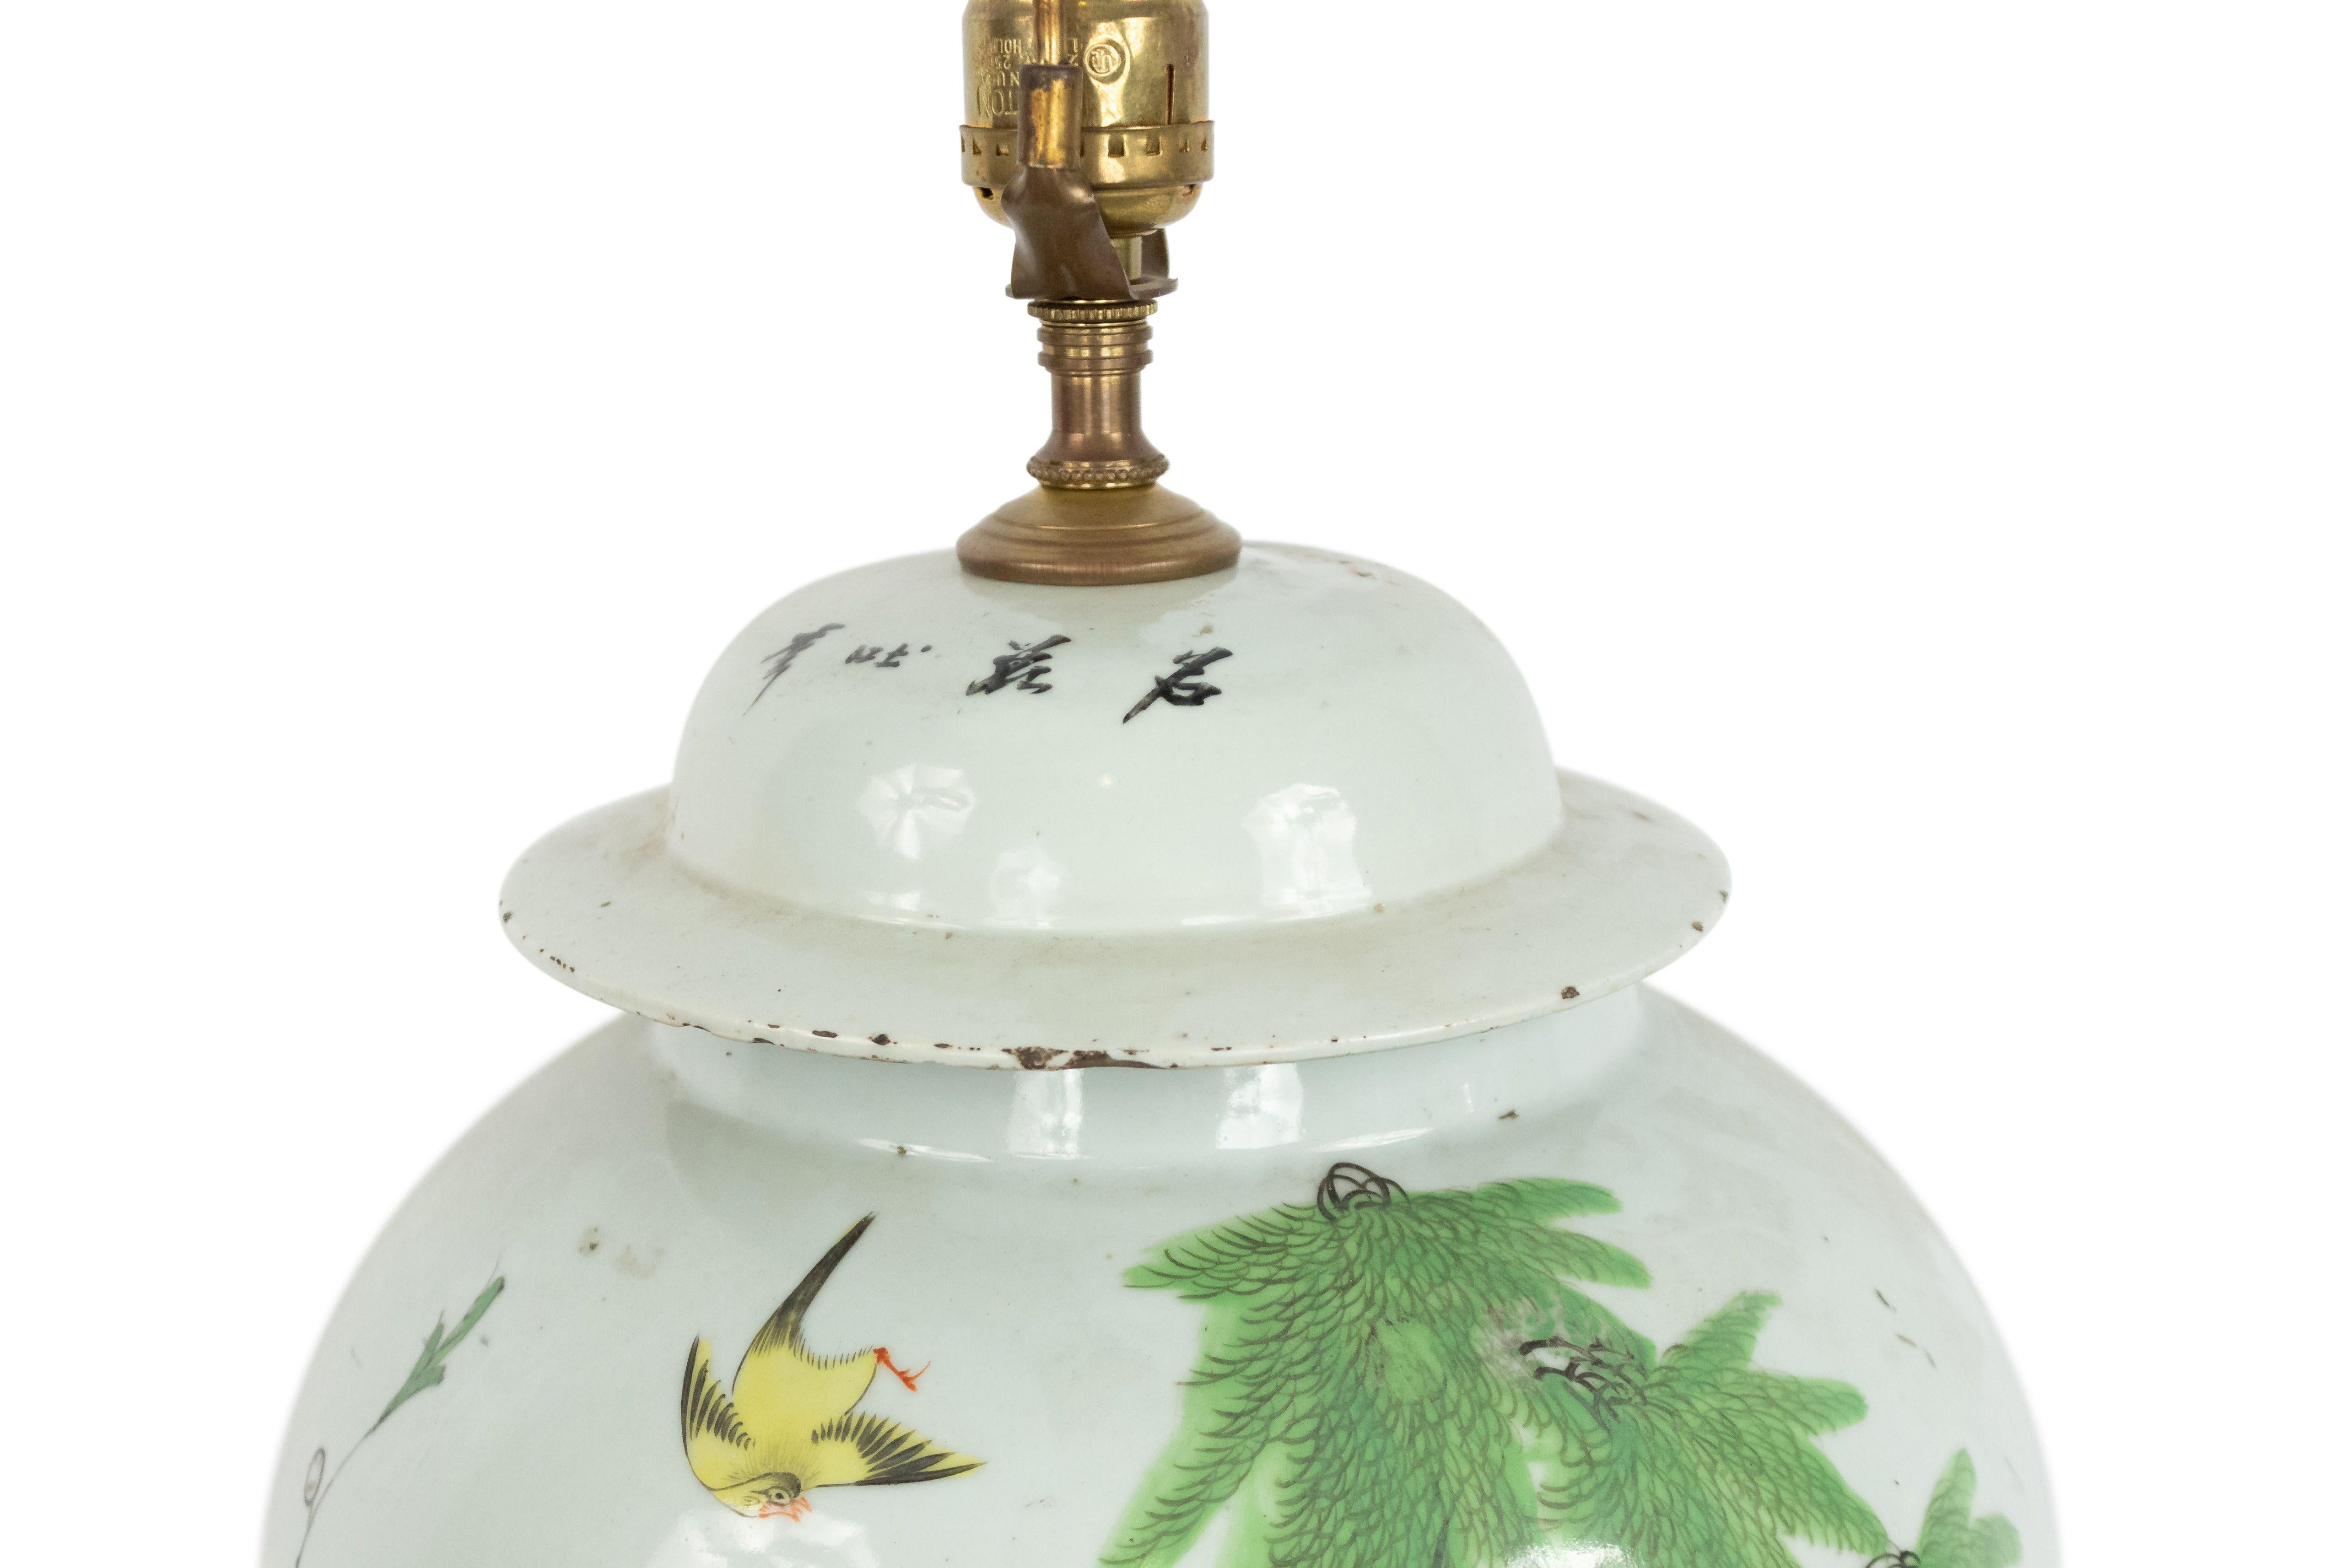 Asiatisch-chinesischen Stil 19. Jahrhundert weißes Porzellan Ingwer-Glas Form Lampe mit Blatt-und Vogel-Details auf einem runden Holzsockel montiert.